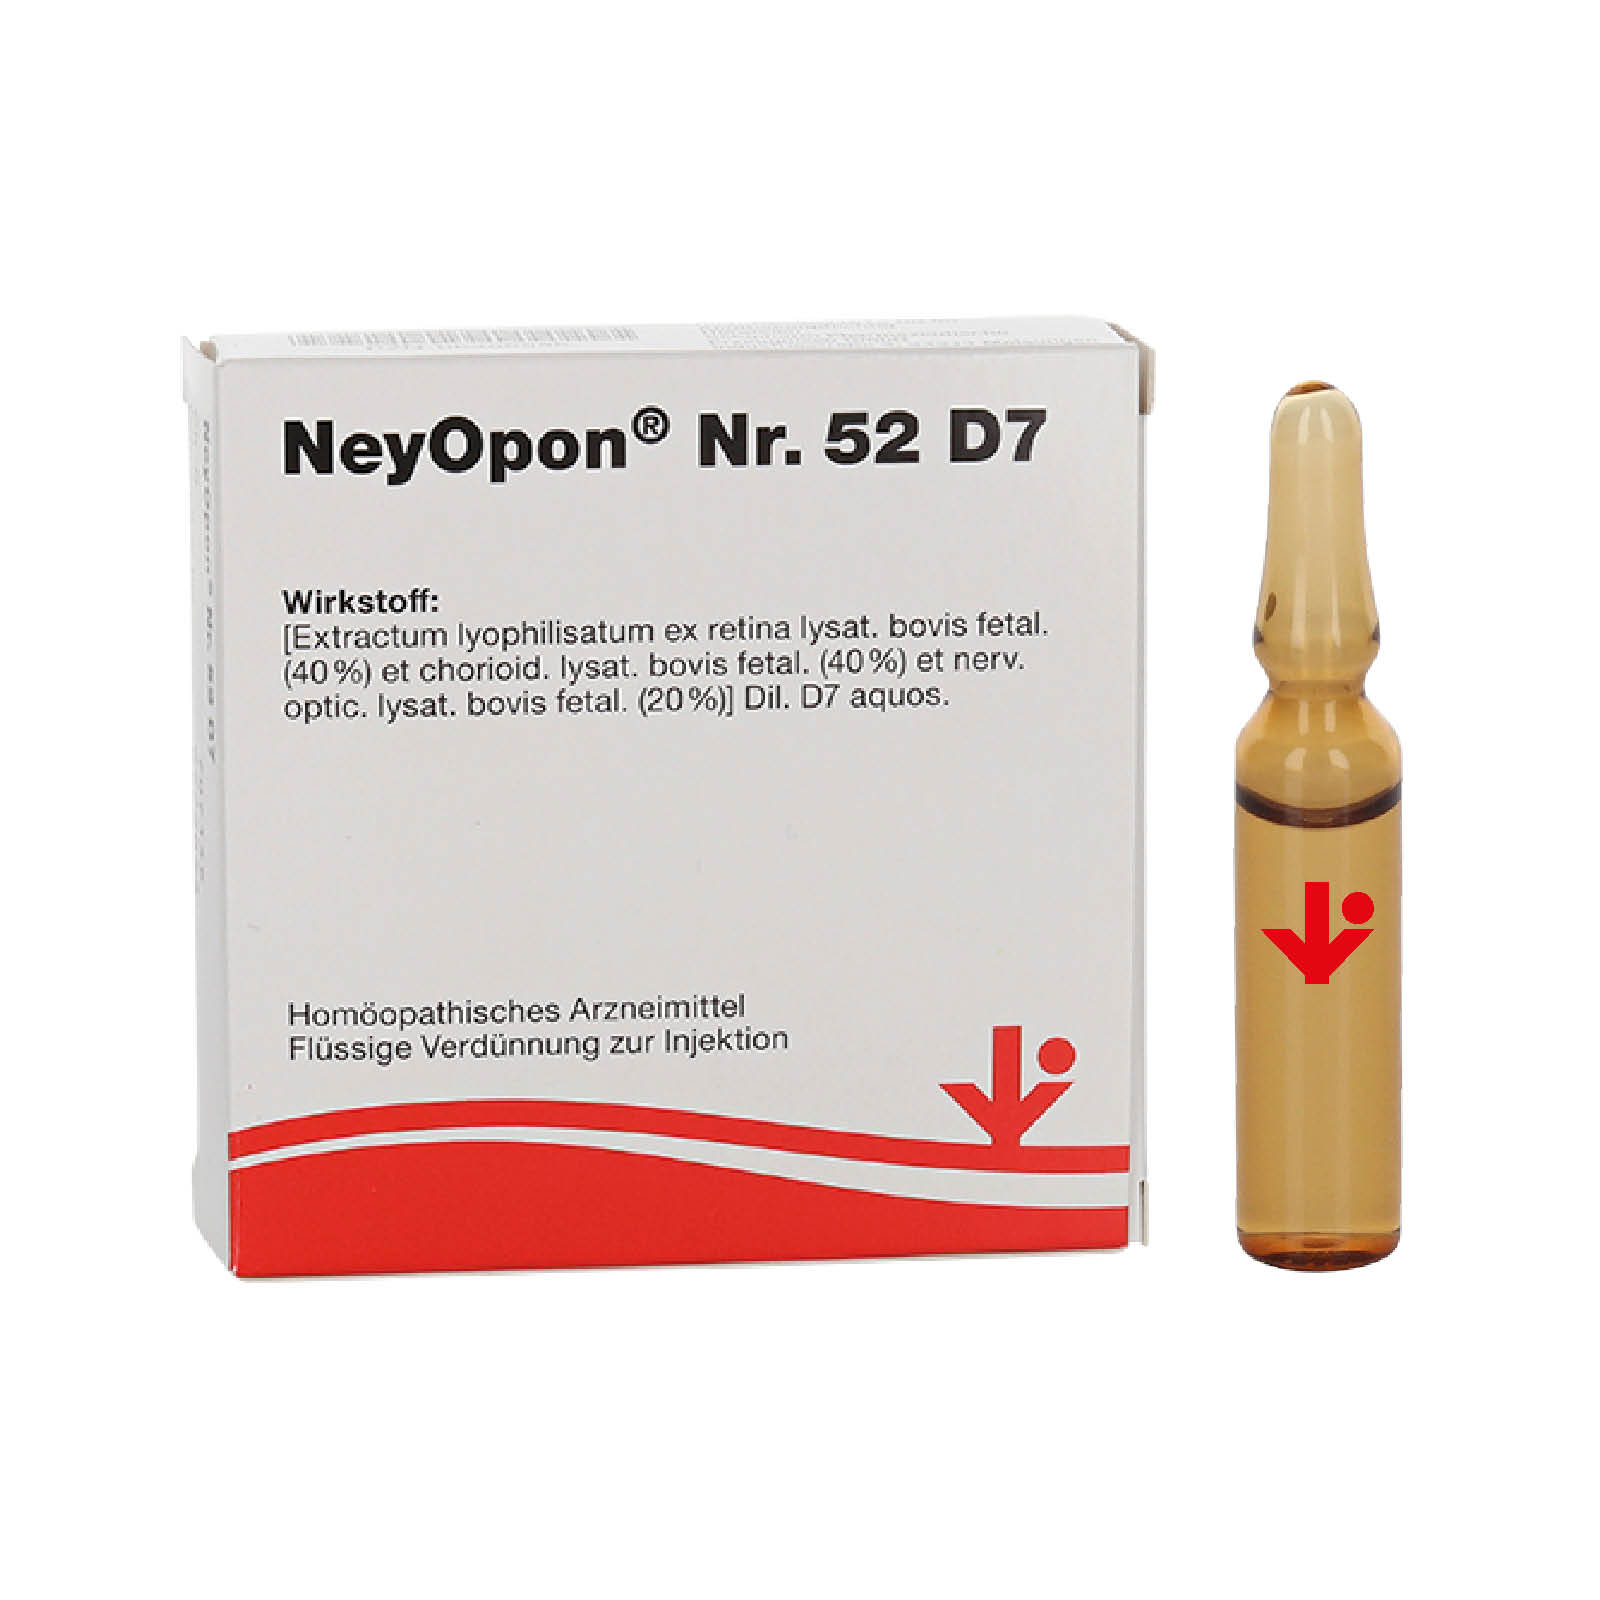 NeyOpon® Nr. 52 D7 (früher NeyOphton® genannt)